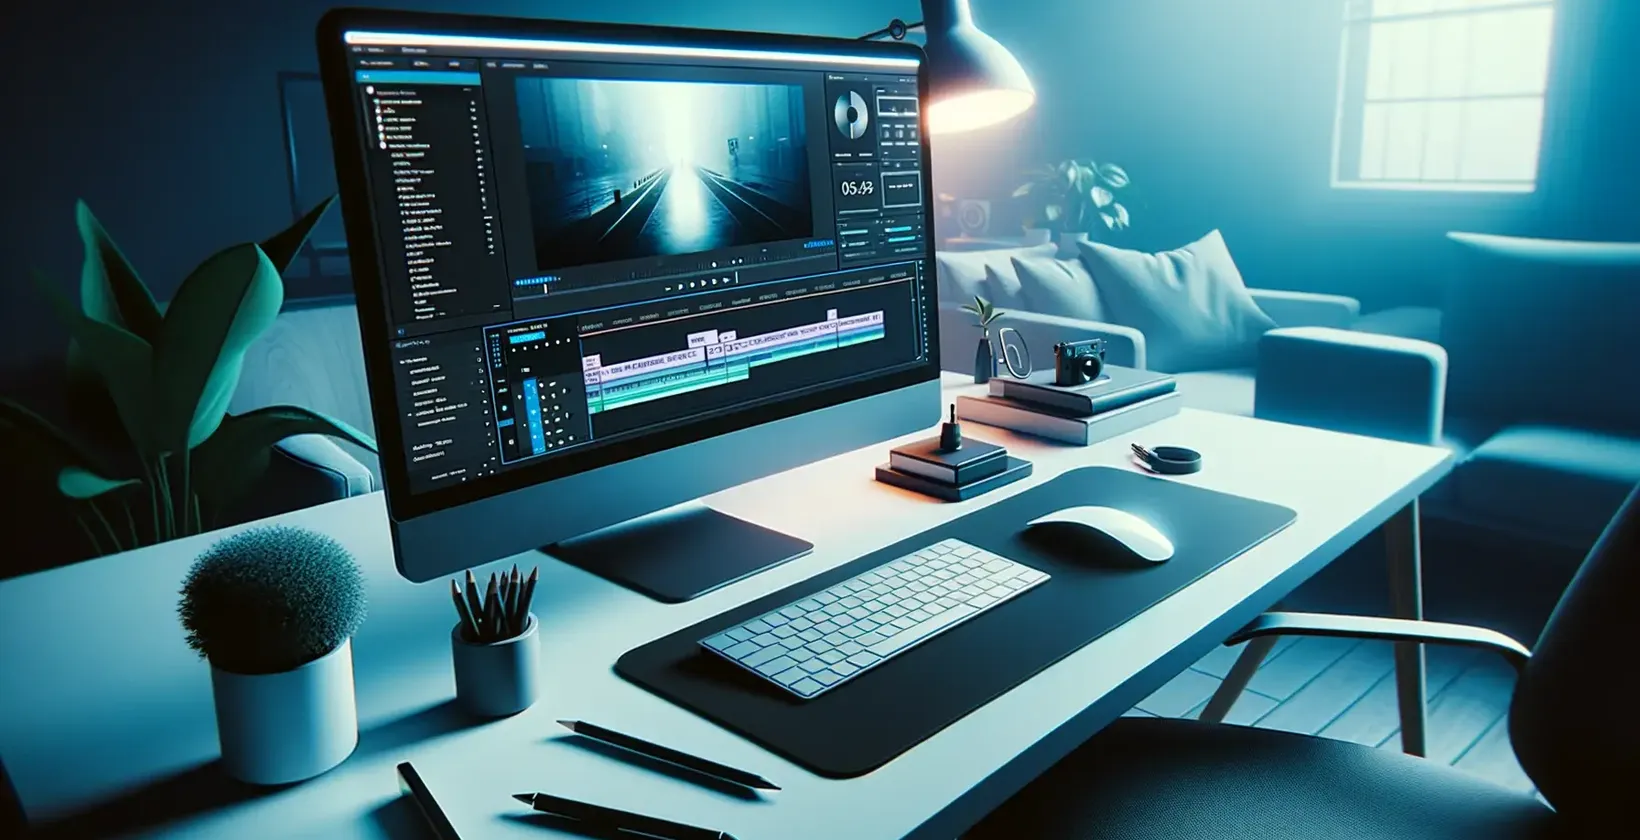 푸른 빛의 세련된 편집 작업 공간으로 설명된 Adobe After Effects로 동영상에 텍스트를 추가하세요.